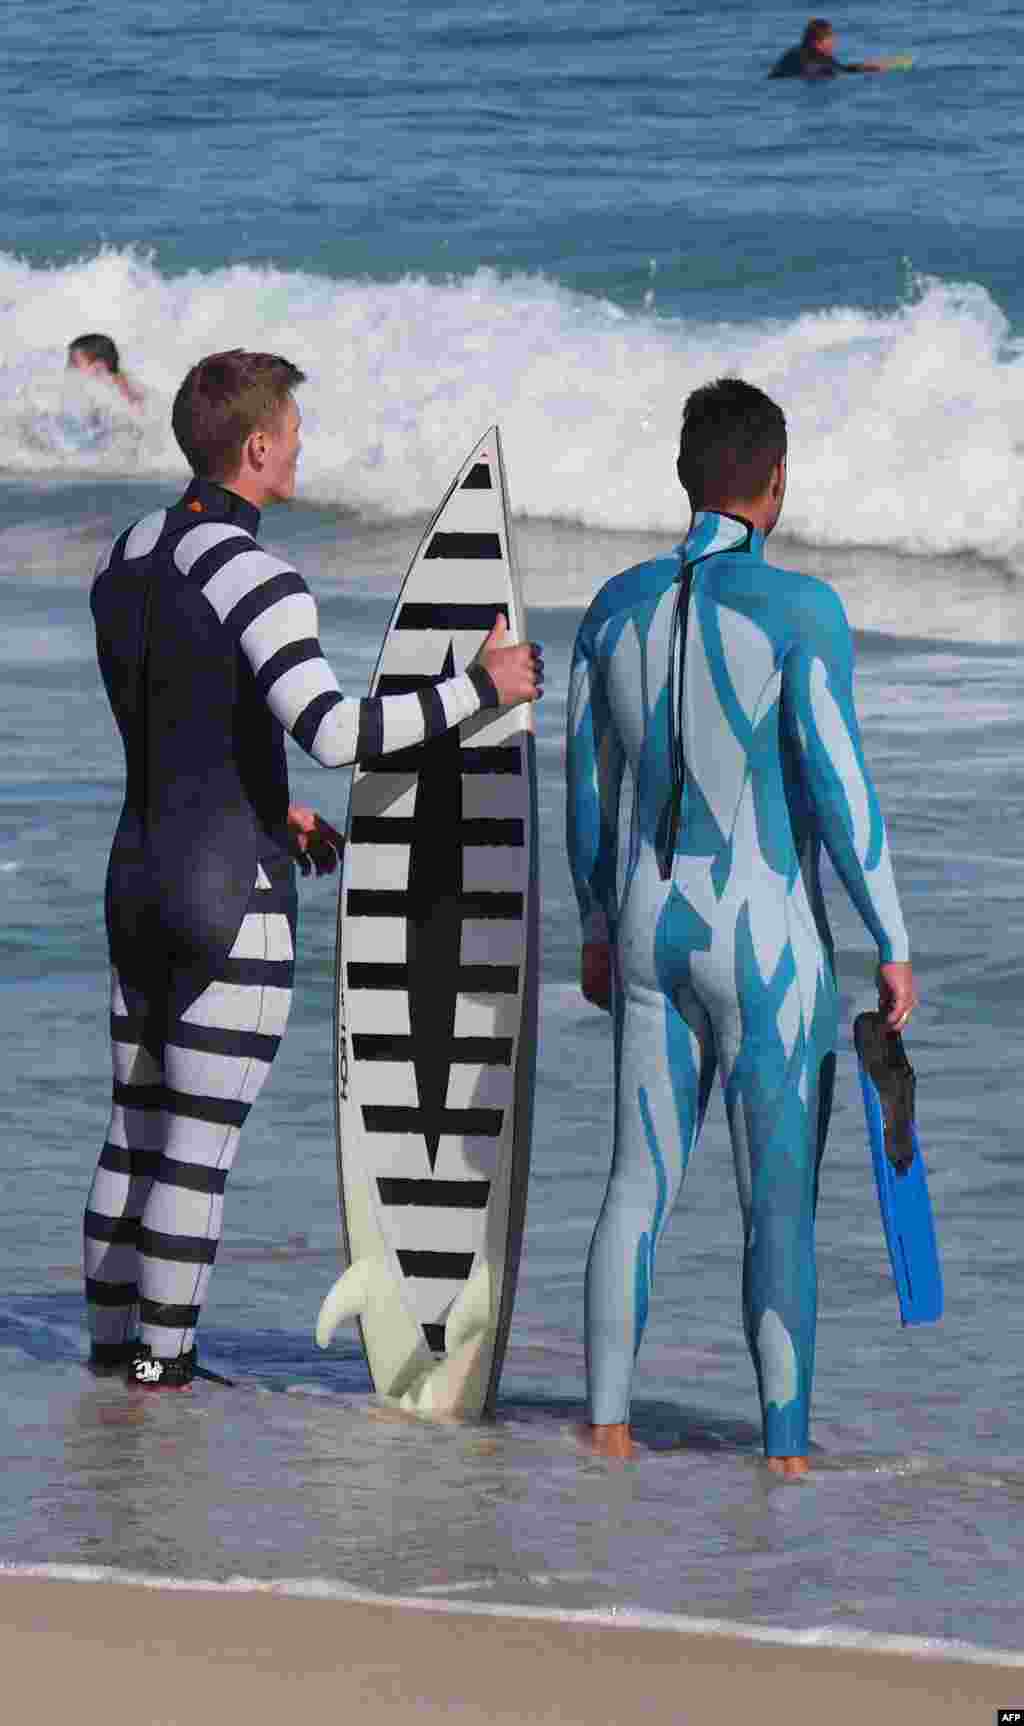 Hai tay bơi lội giới thiệu các trang phục chống cá mập do trường đại học miền tây Australia thiết kế. Hai bộ quần áo này và hai tấm ván sử dụng công nghệ SAMS đặc biệt khiến cá mập phải tránh xa hoặc không nhận ra.